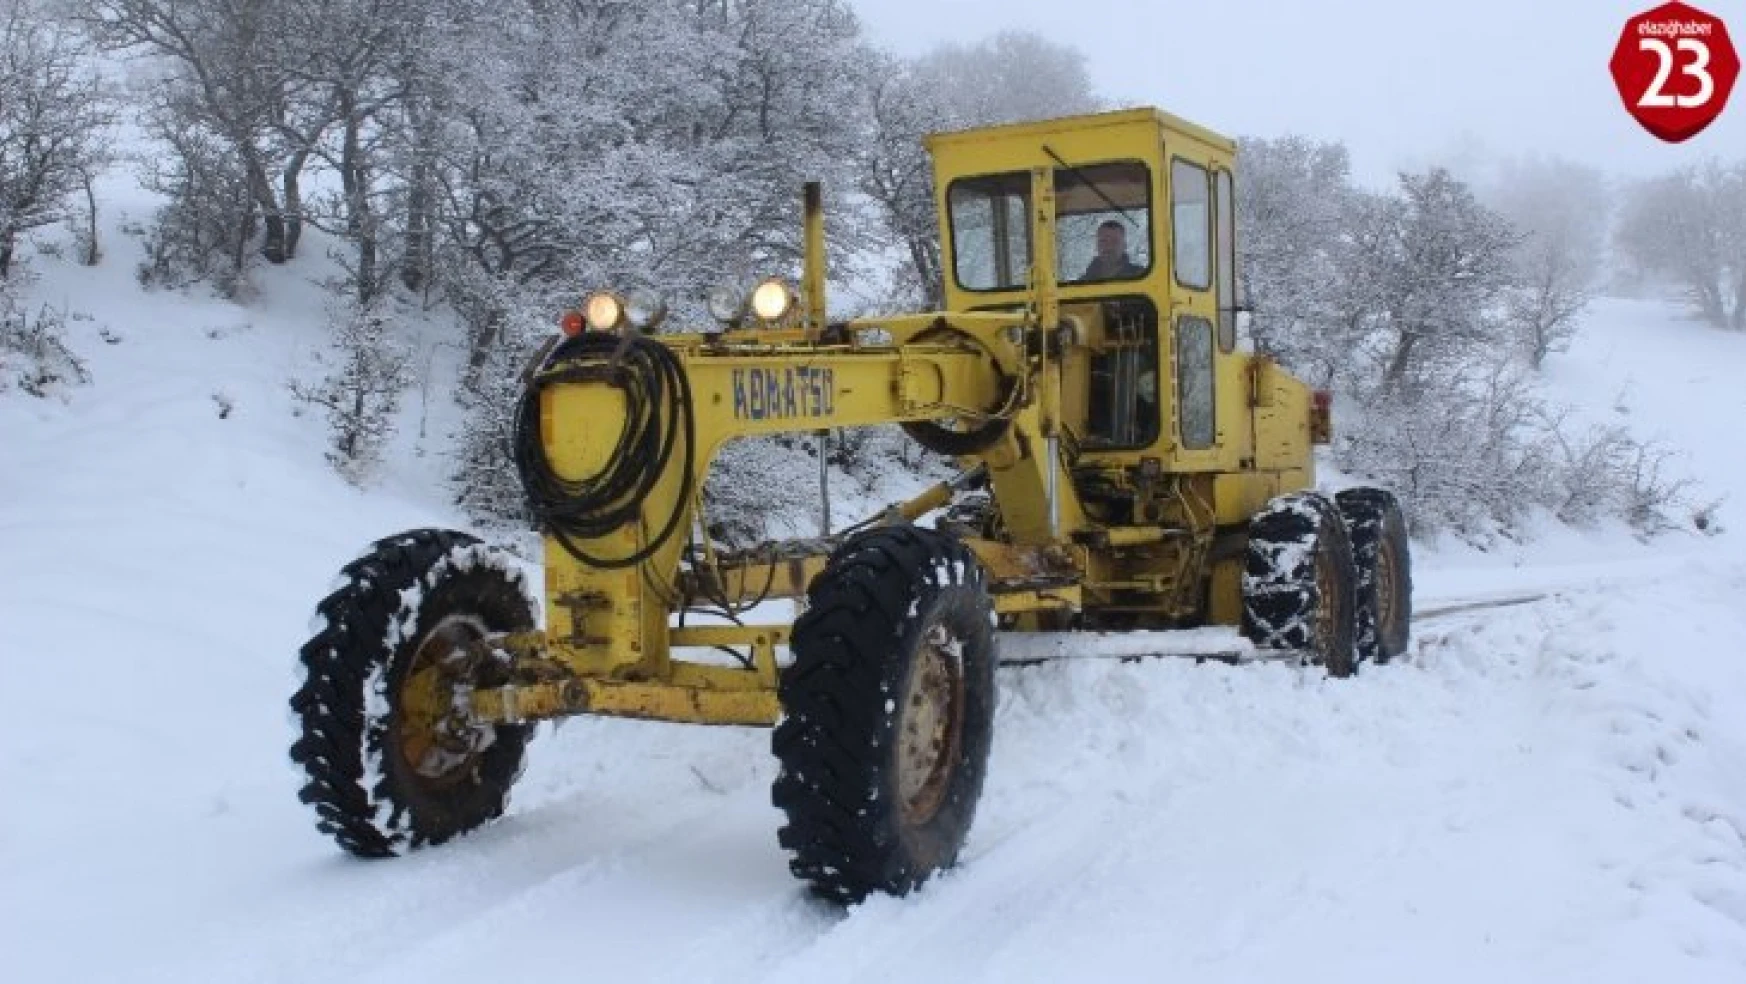 Elazığ'da karla mücadele:35 köy yolunun açılması için çalışma yürütülüyor